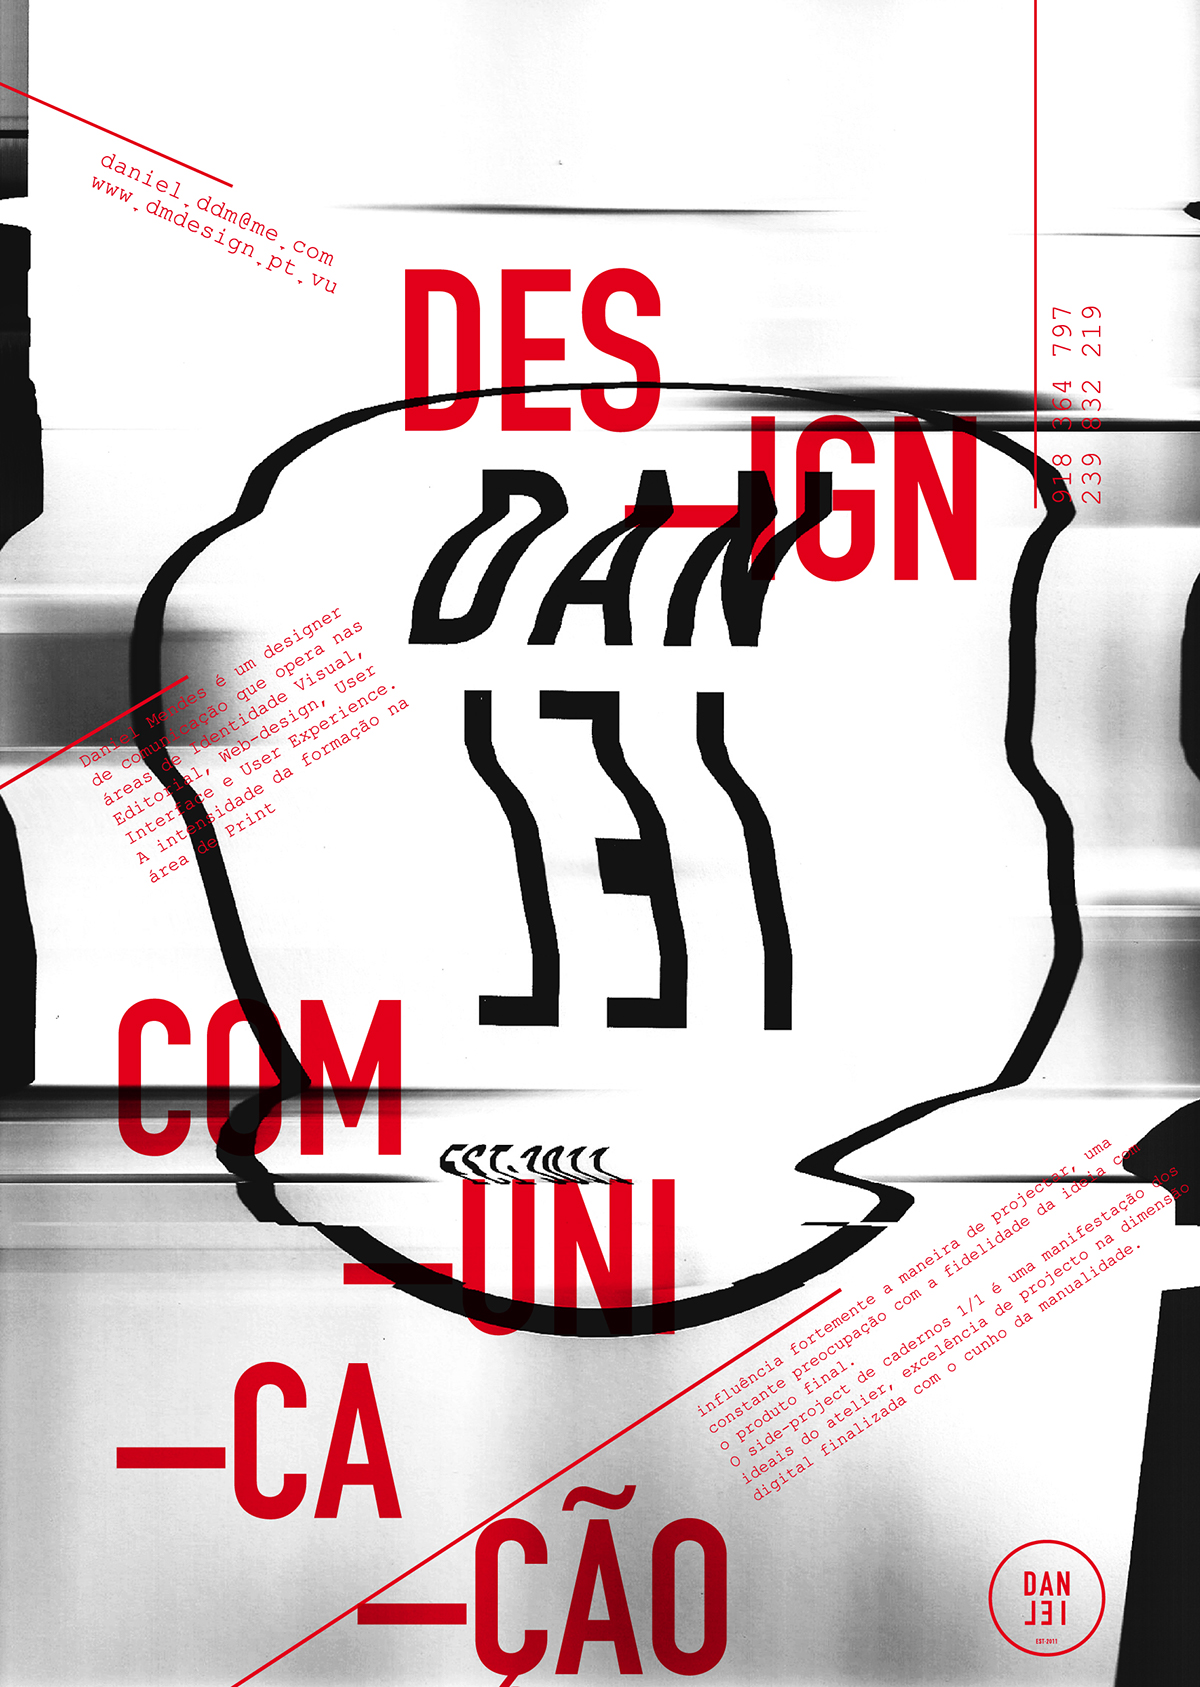 poster Daniel Mendes self-promotion design color type digital scanner